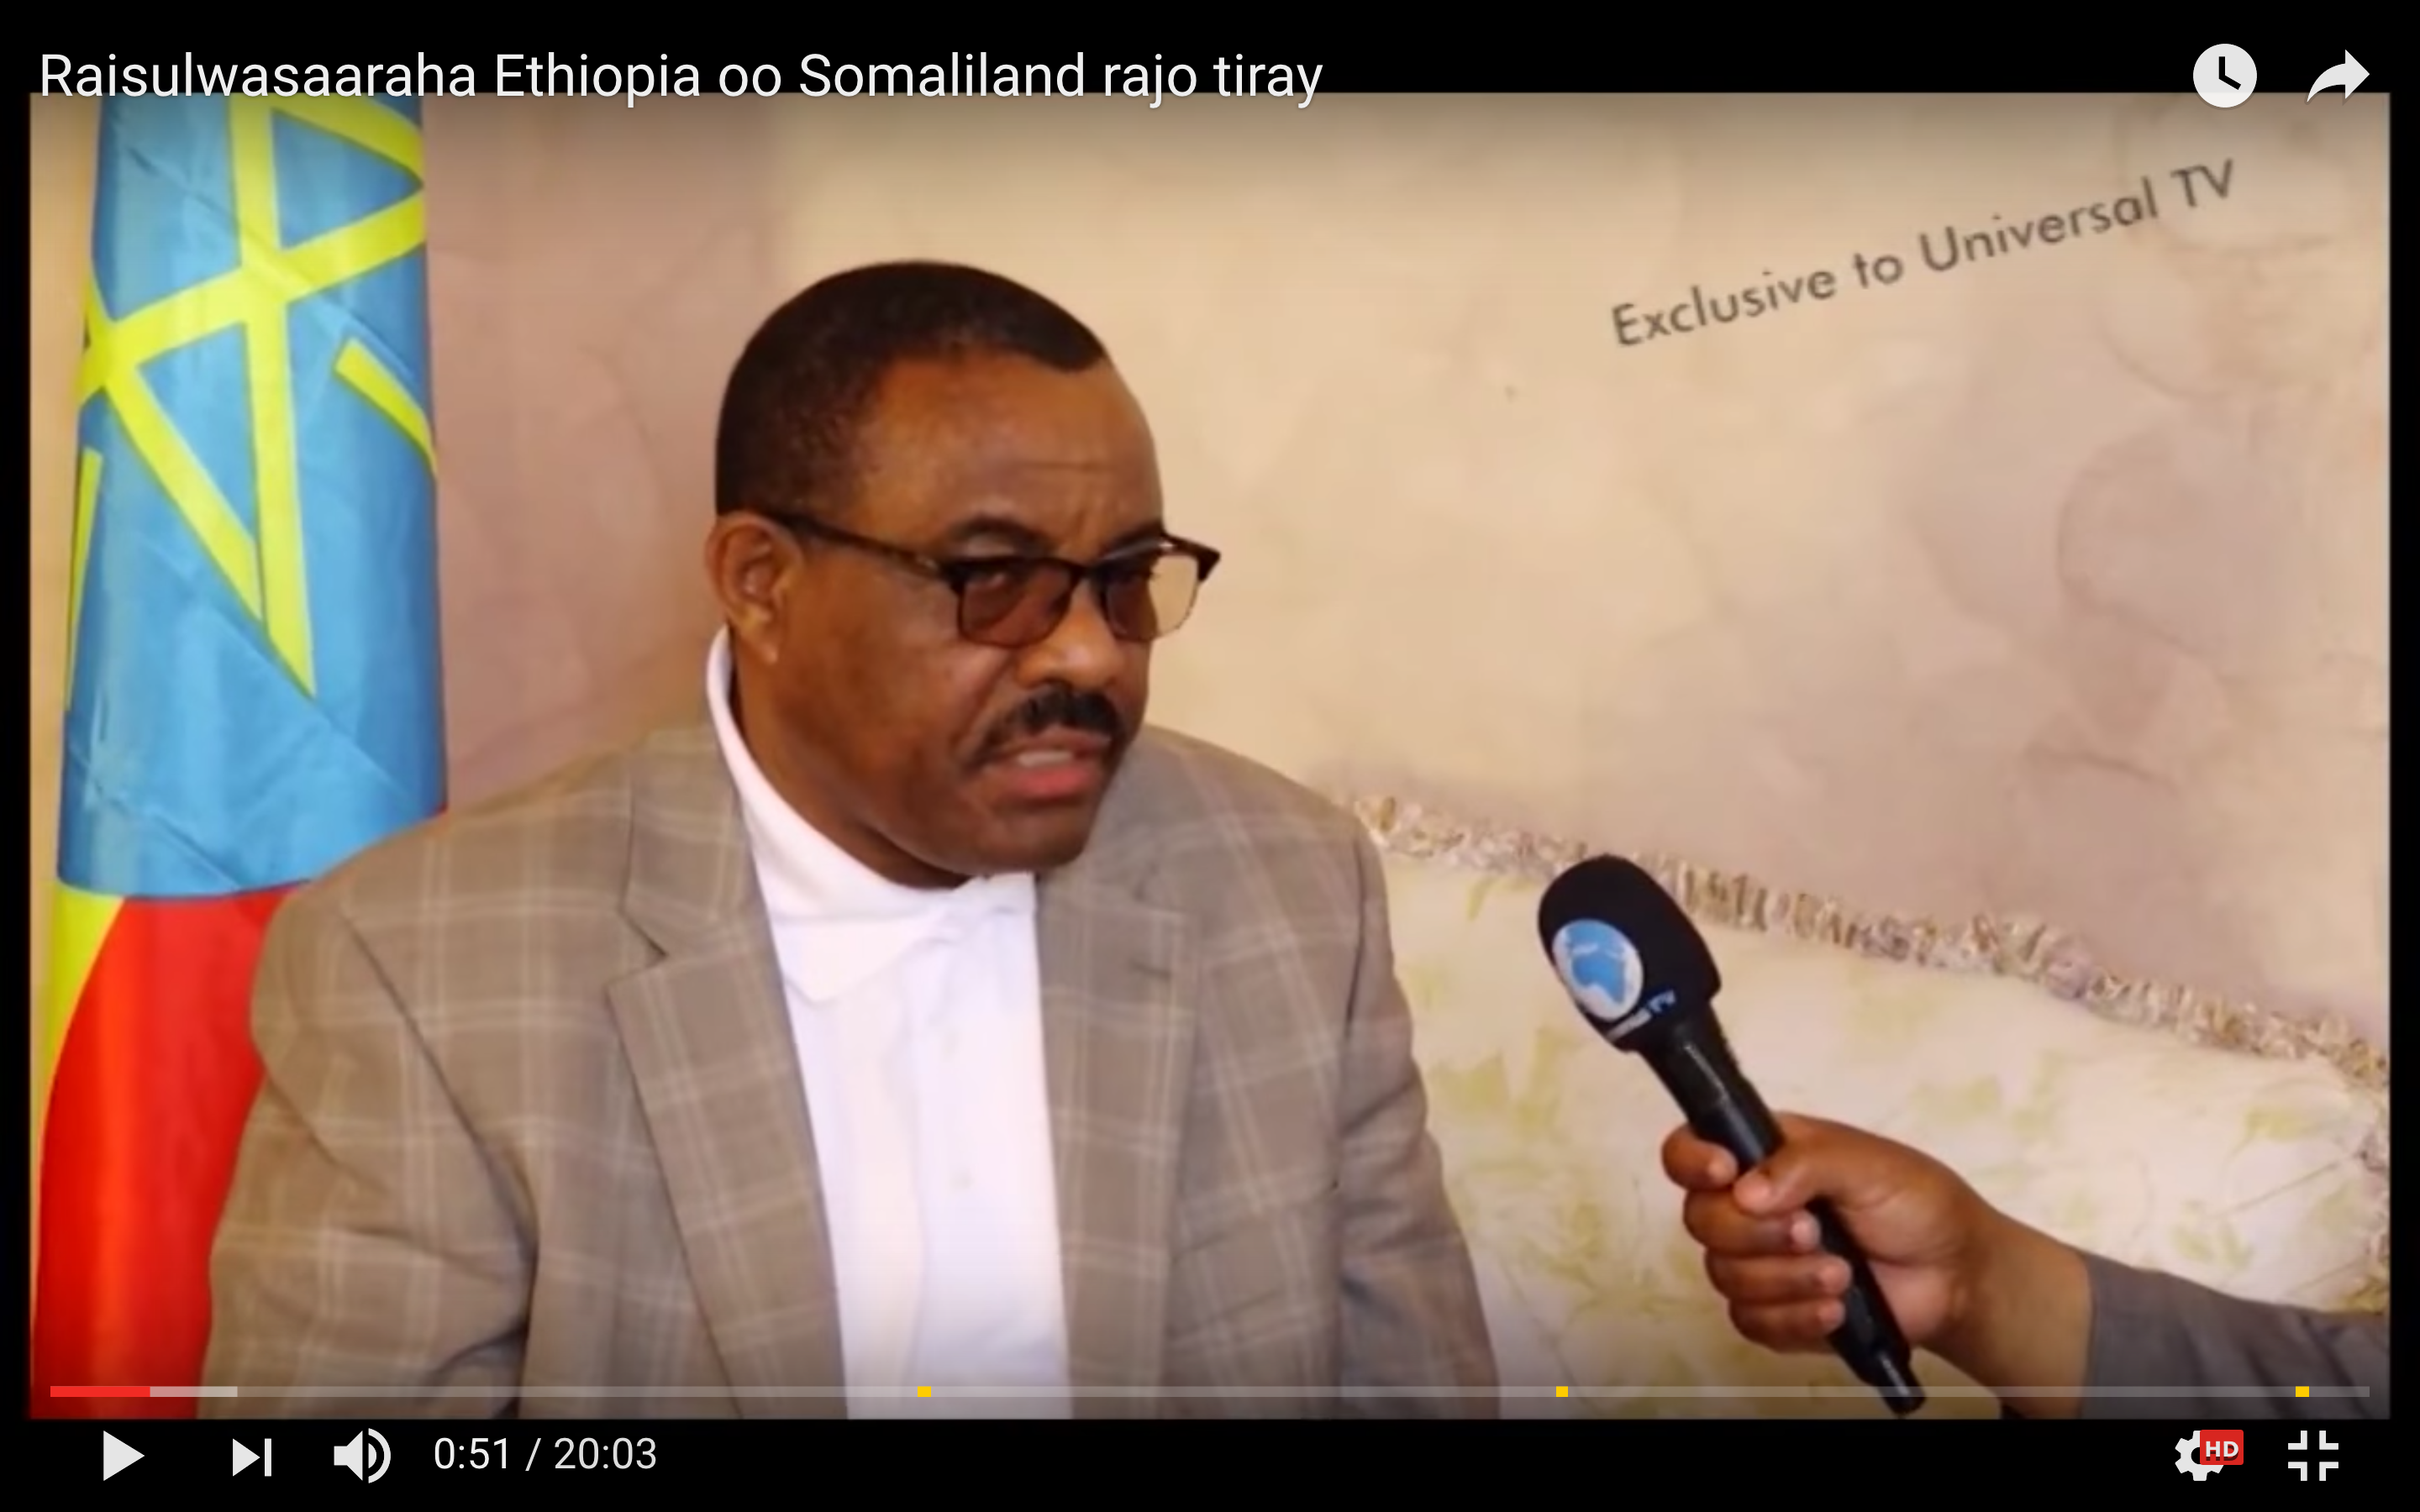 [Daawo] Raisulwasaaraha Ethiopia oo cadeeyay iney Garguurte taageersan yihiin laakiin Somaliland rajo beel ku riday